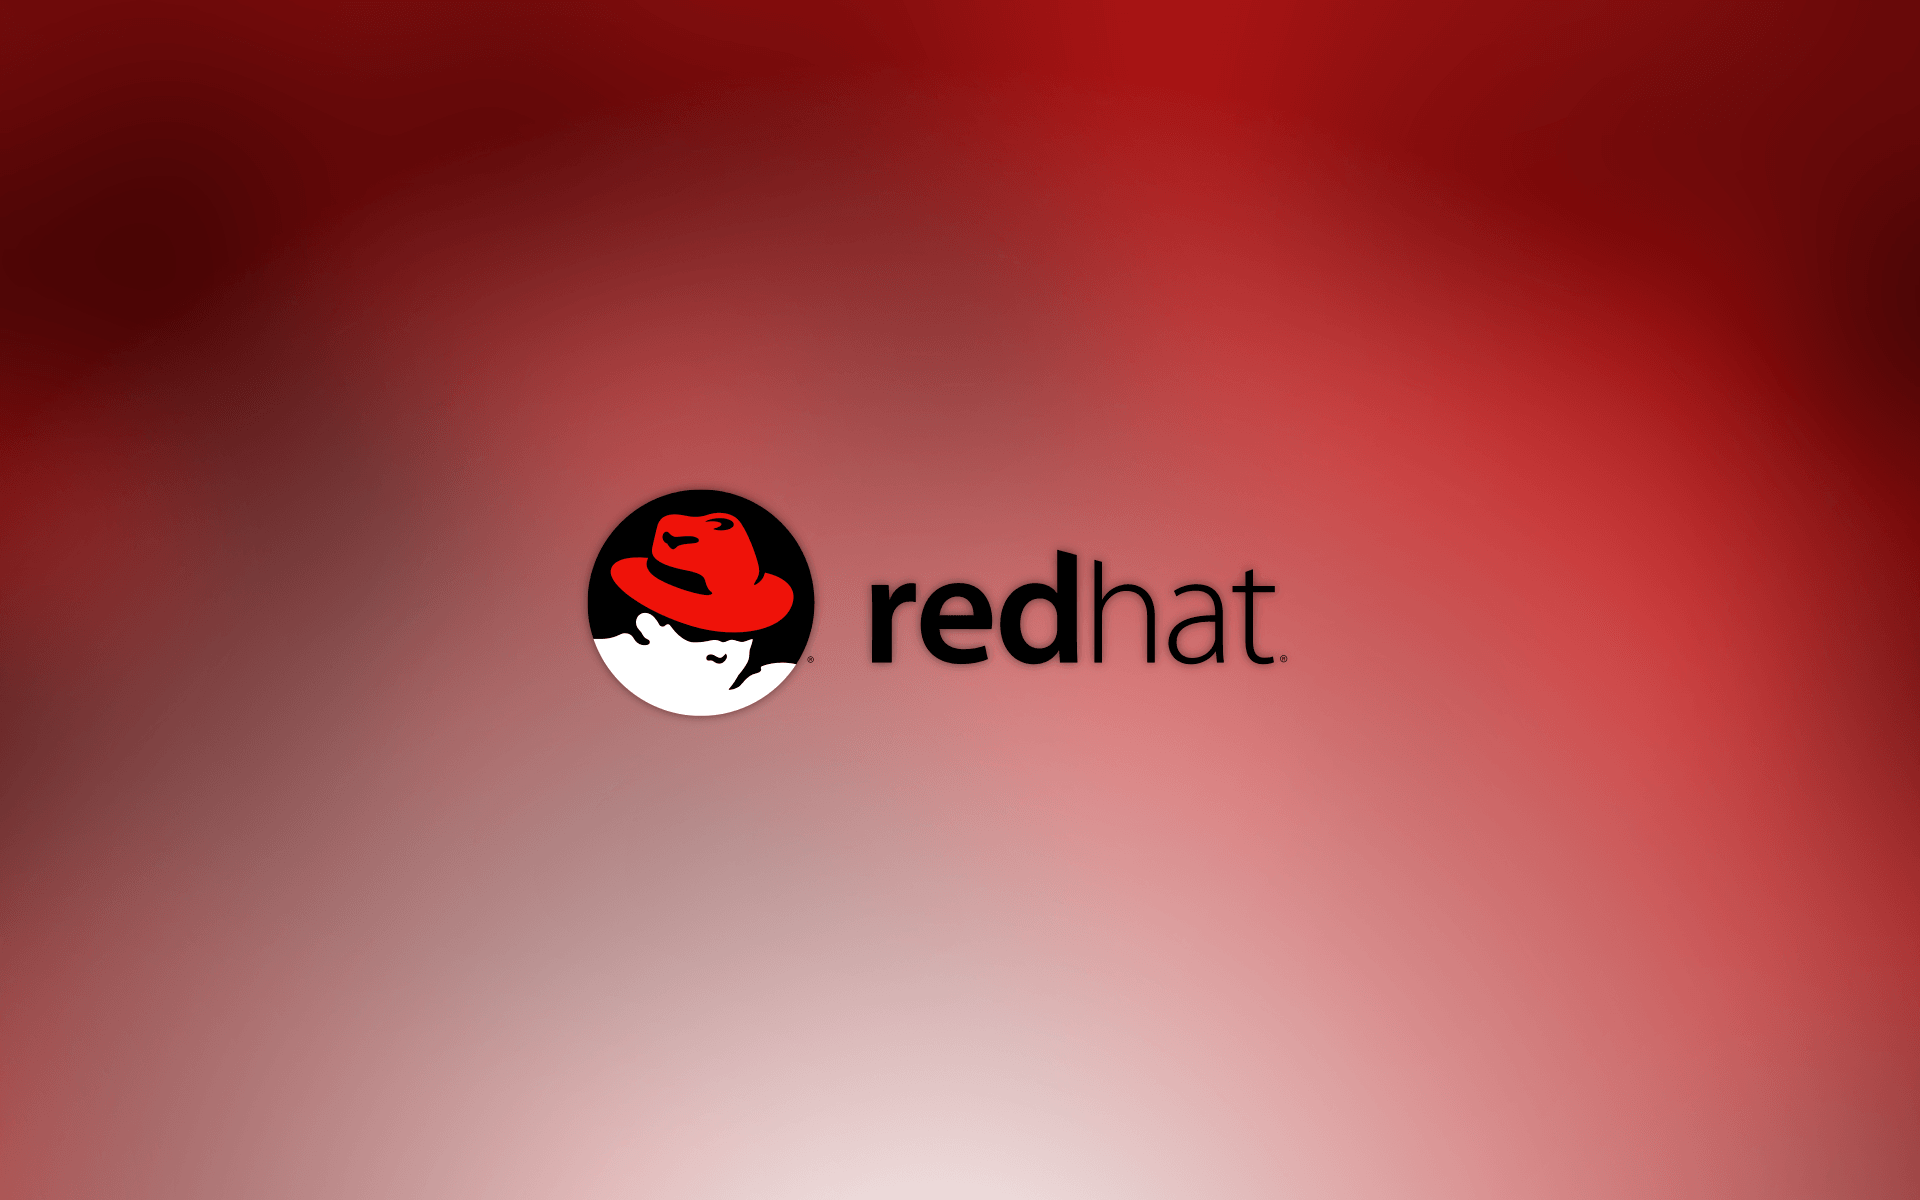 Red hat enterprise linux 5 32 bit iso download